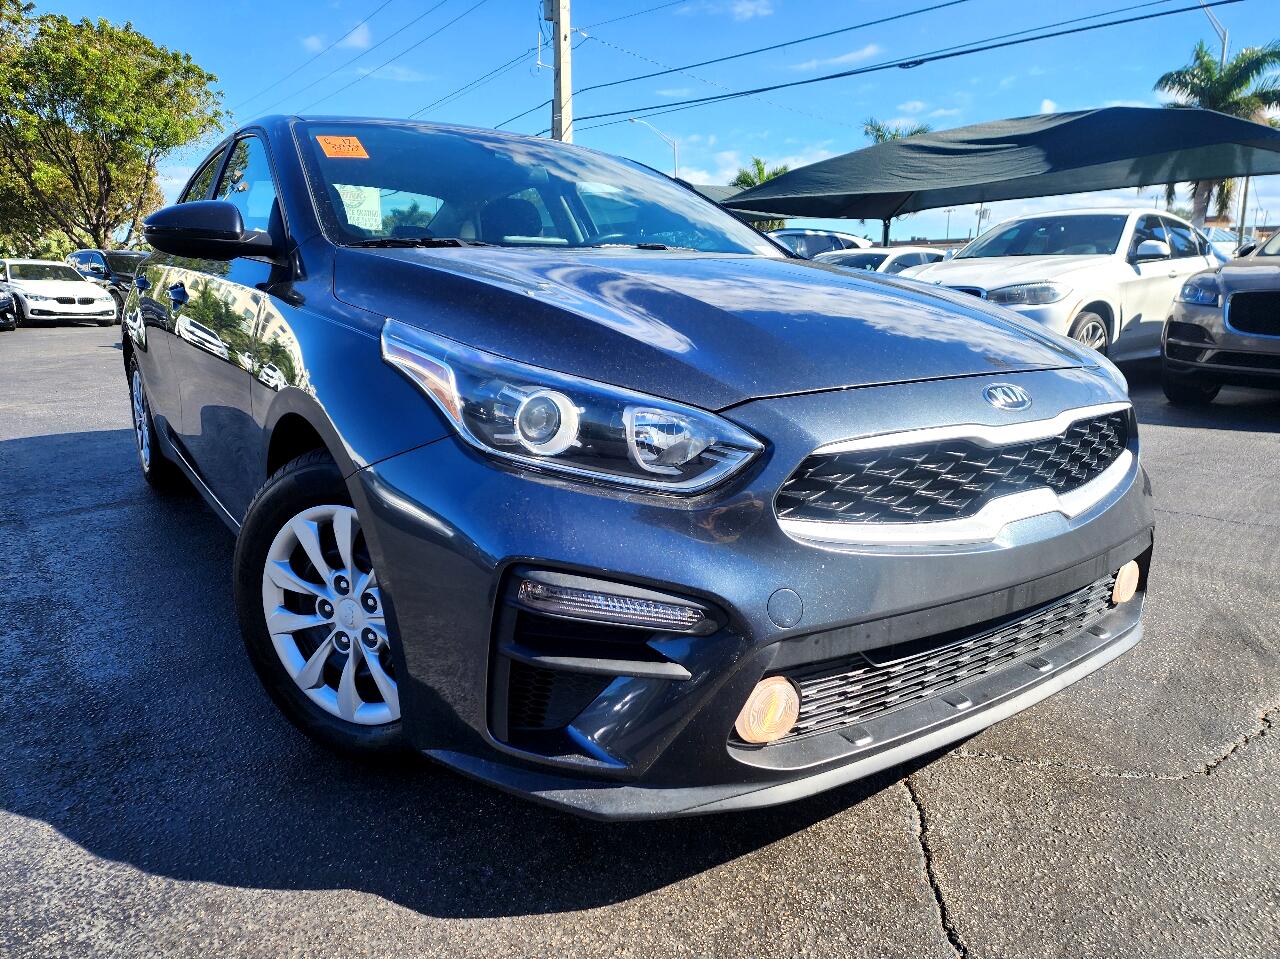 2019 KIA Forte Sedan - $12,999